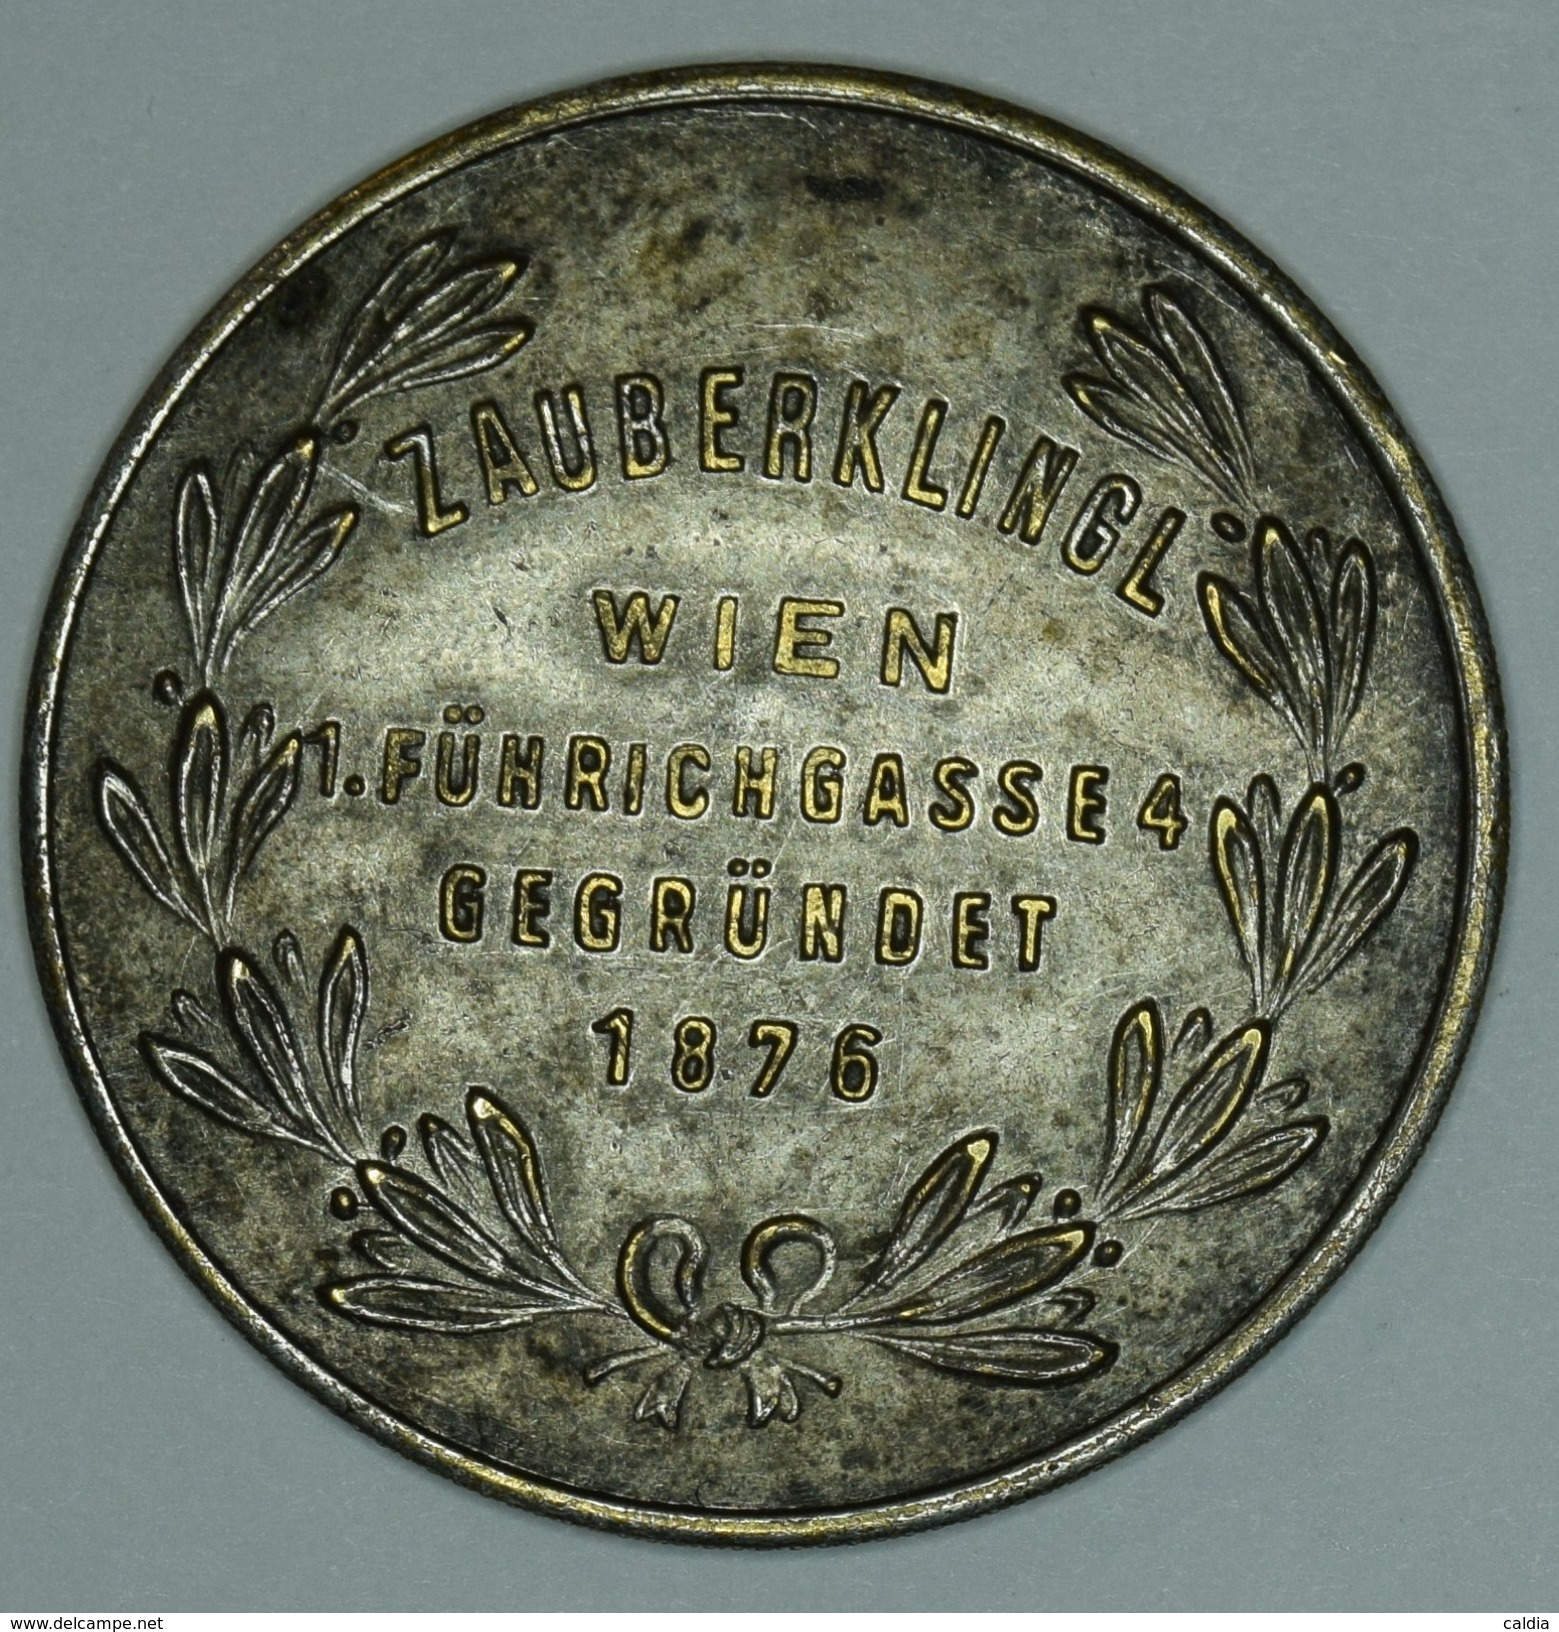 Autriche Austria Österreich 1867 " Wiener Zauber - Apparaten - Haupt - Depot "  Medal - Avant 1871